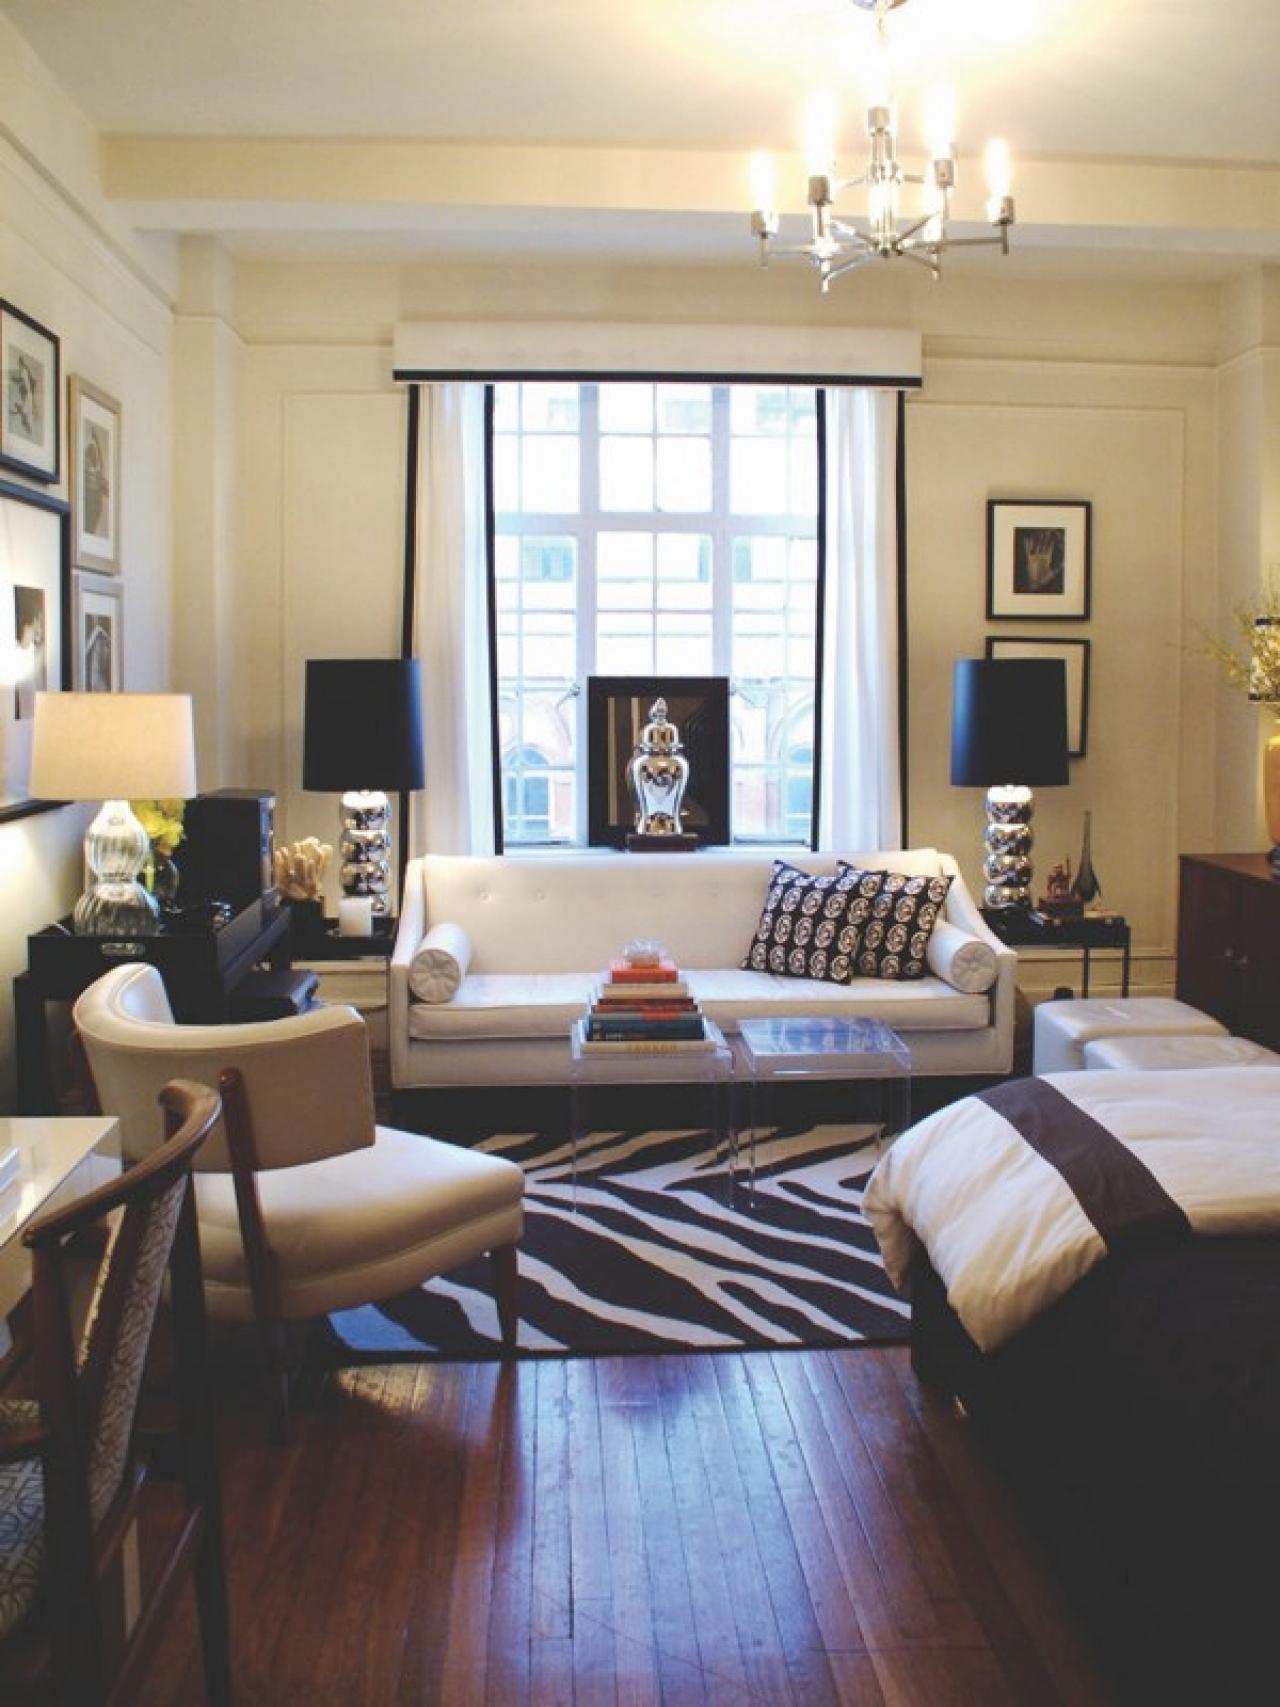 12 Design Ideas For Your Studio Apartment HGTVs Decorating